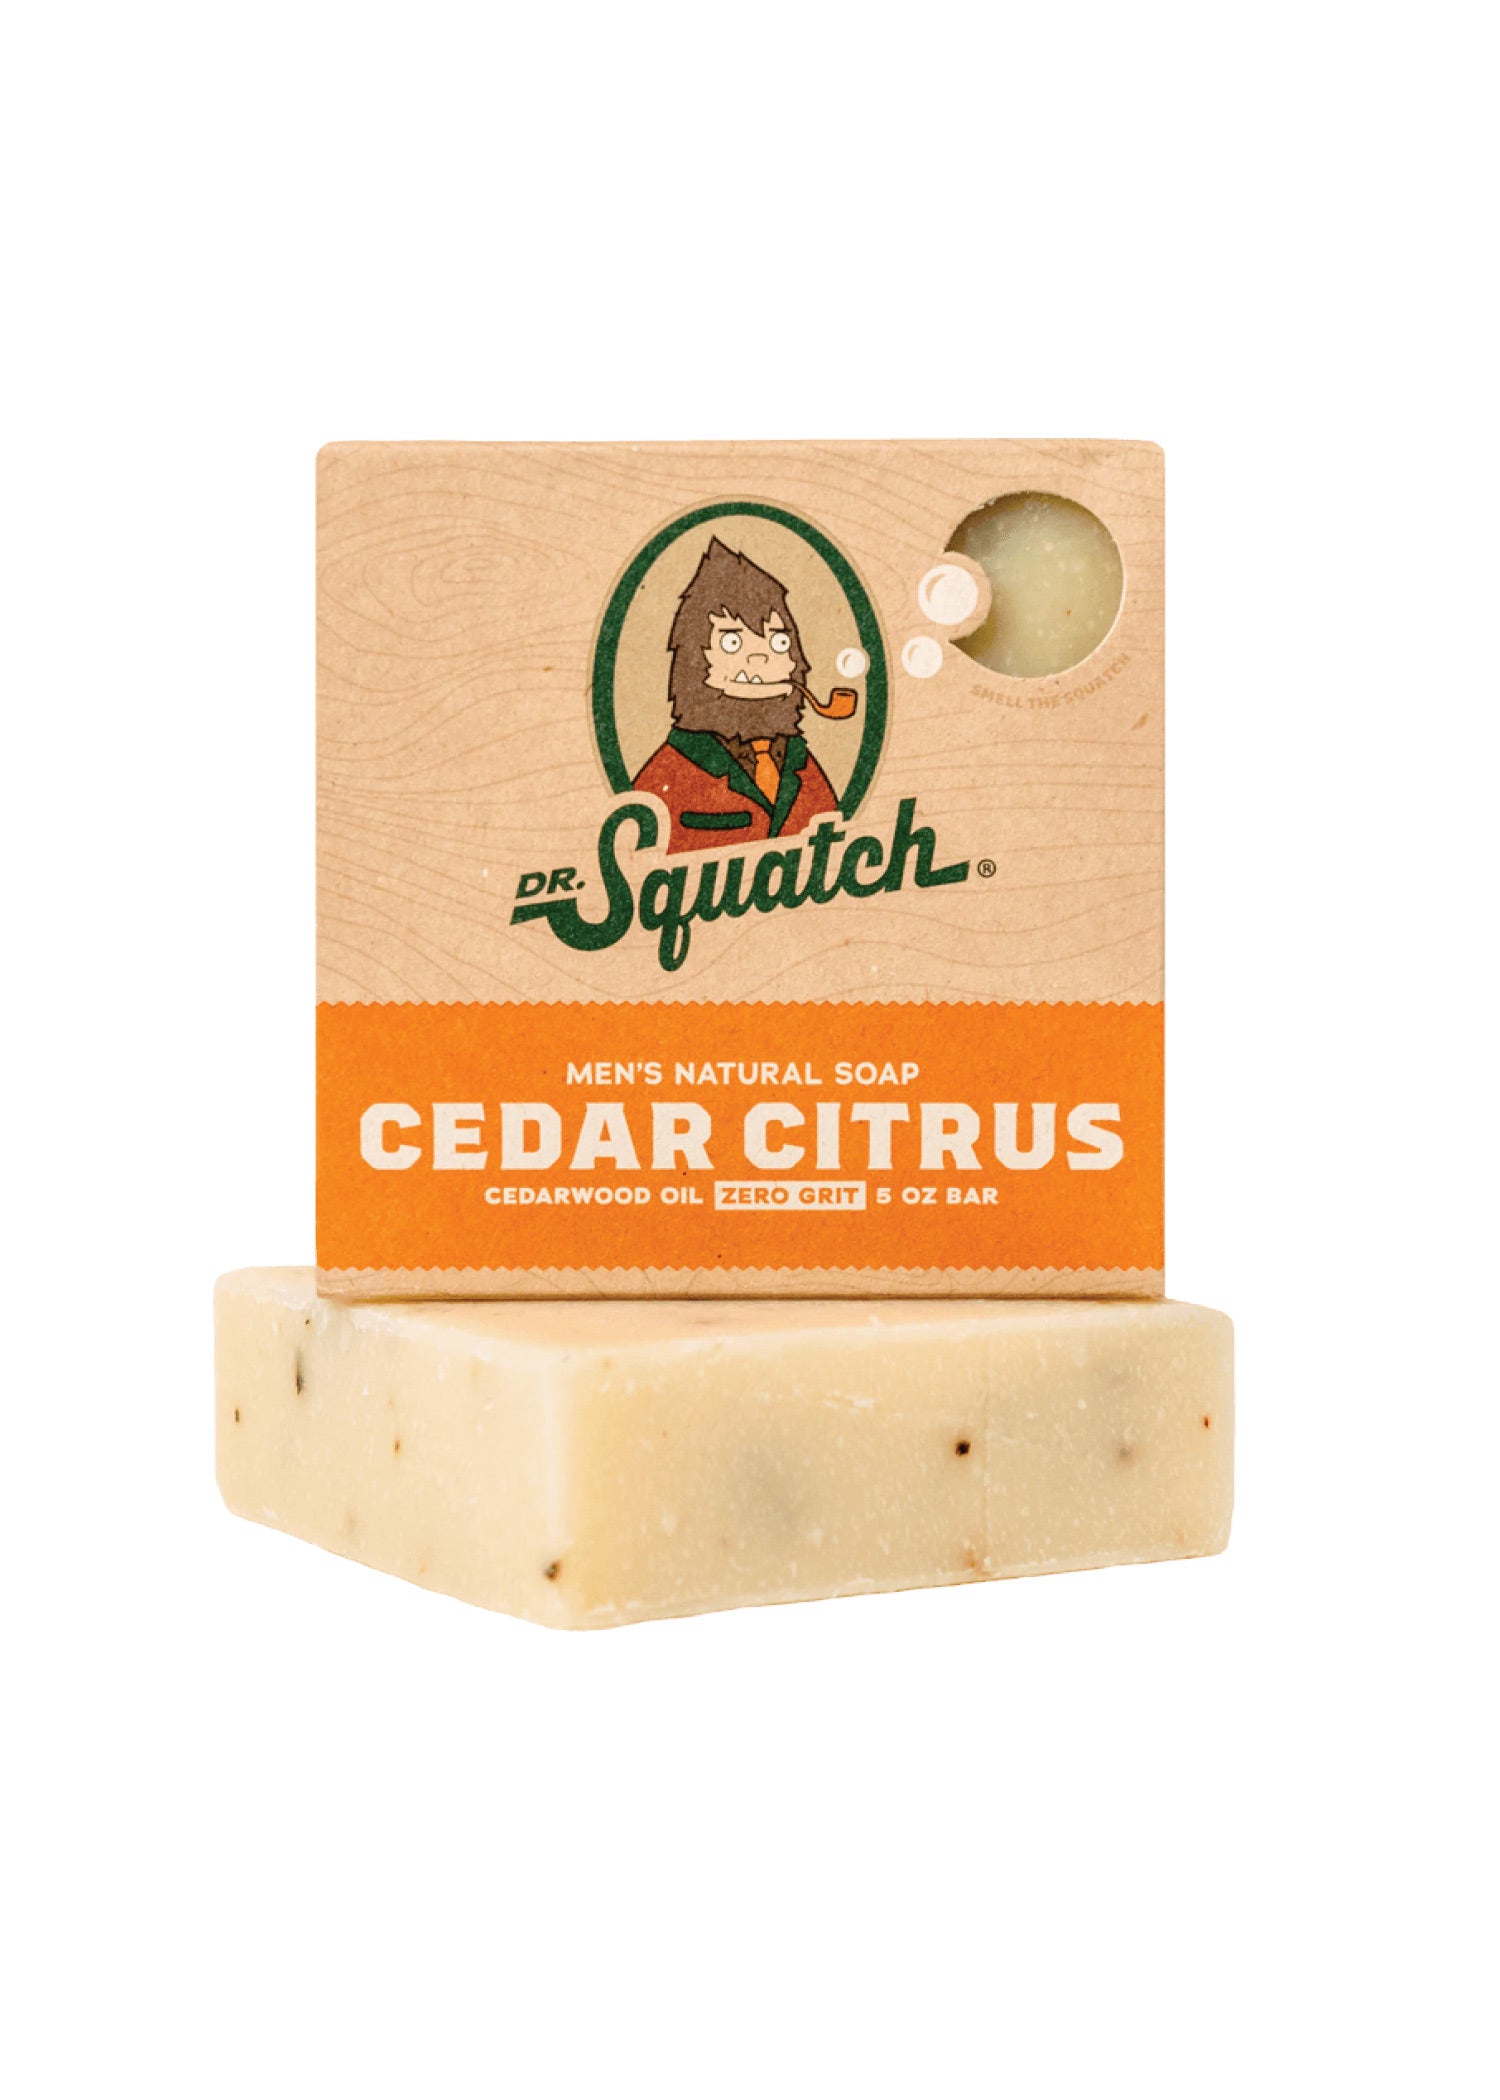 Dr. Squatch Mens Cedar Citrus Soap Ingredients and Reviews